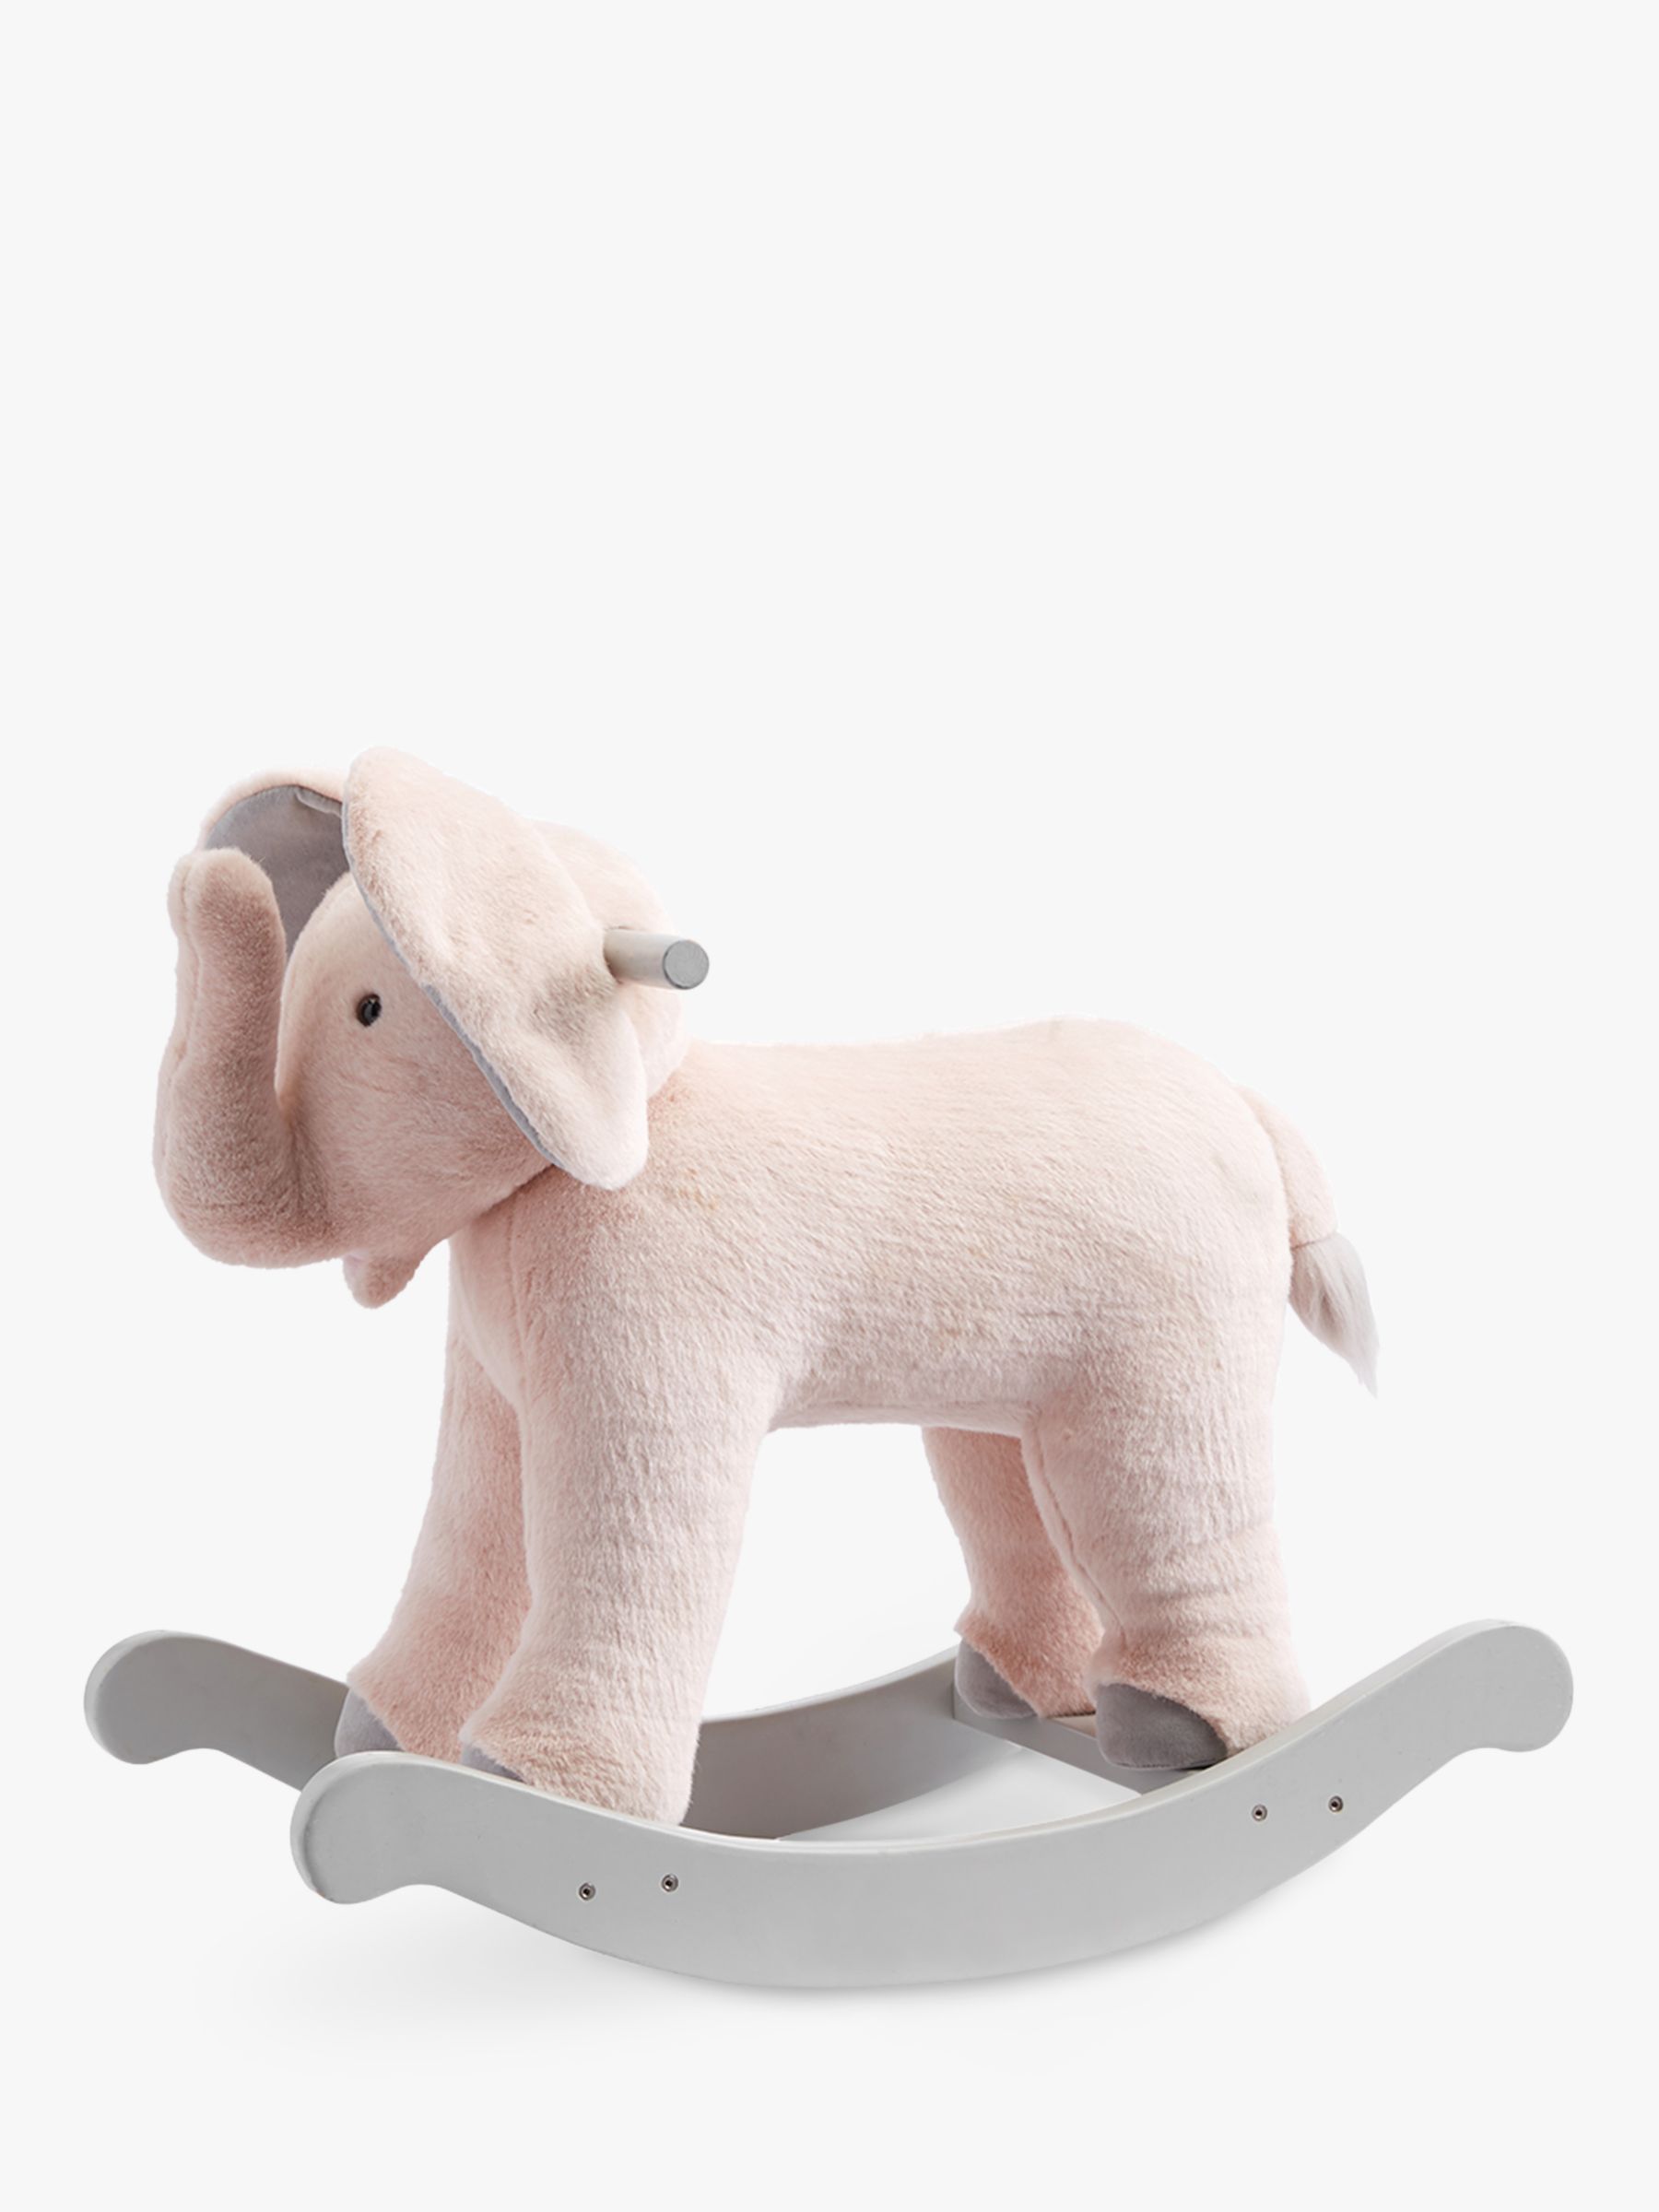 rocking elephant toy